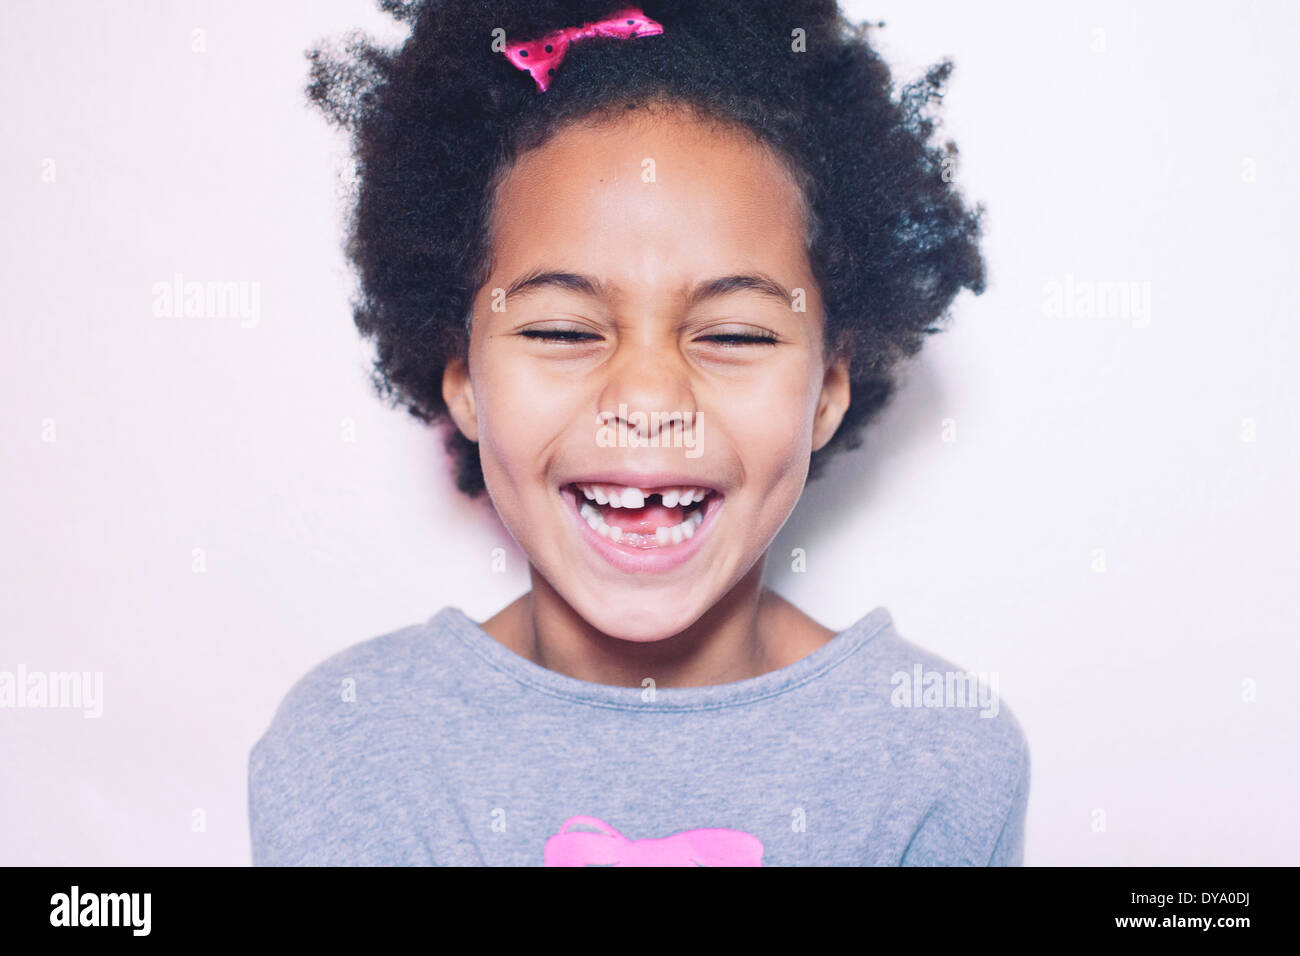 Little girl, portrait Stock Photo